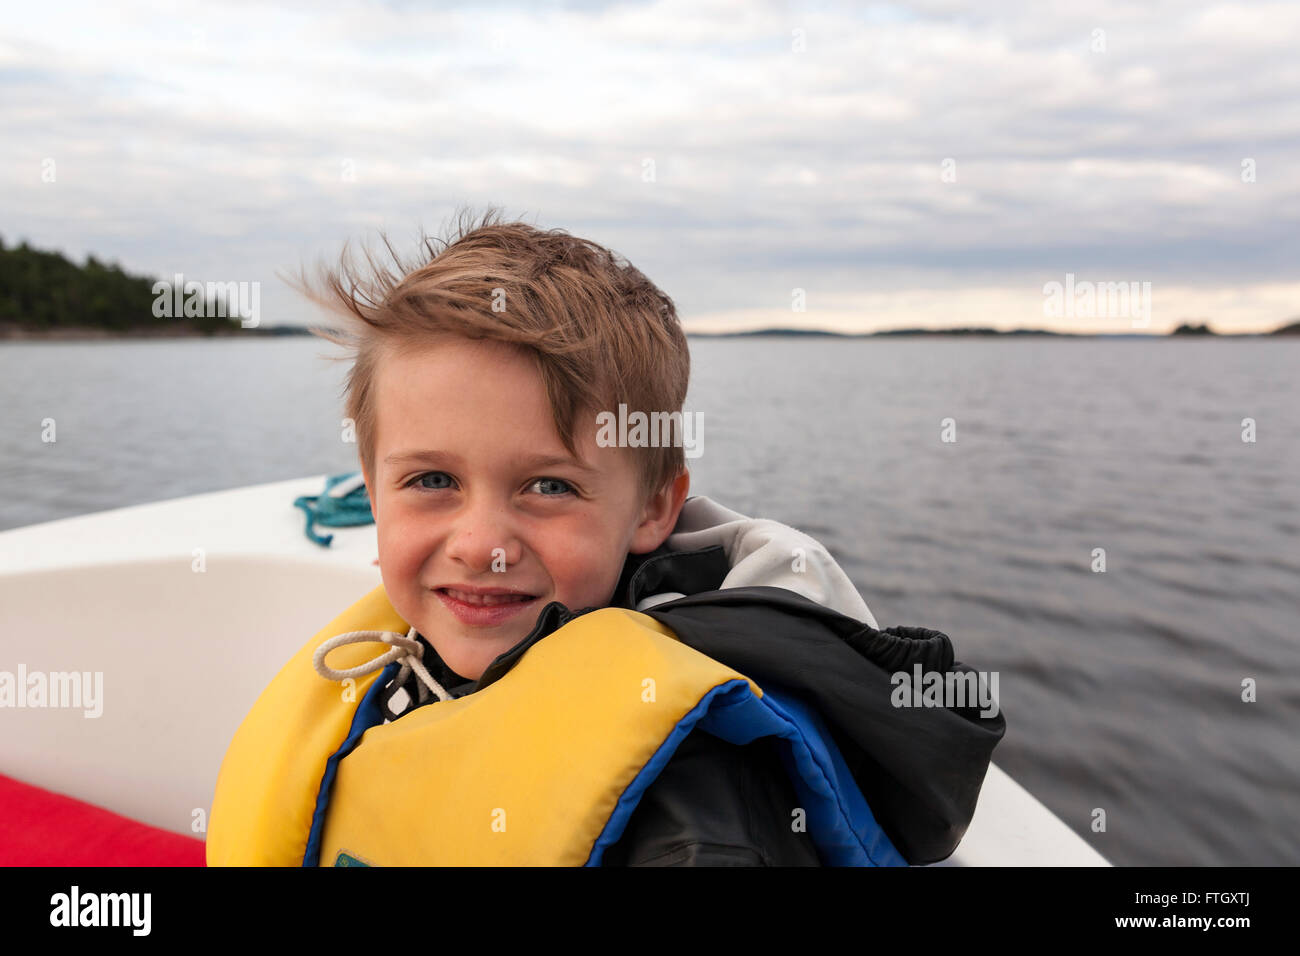 Jeune garçon portant un gilet à l'avant d'un bateau à moteur en mer à la recherche de modèle d'appareil photo de presse : Oui. Biens : Non. Banque D'Images